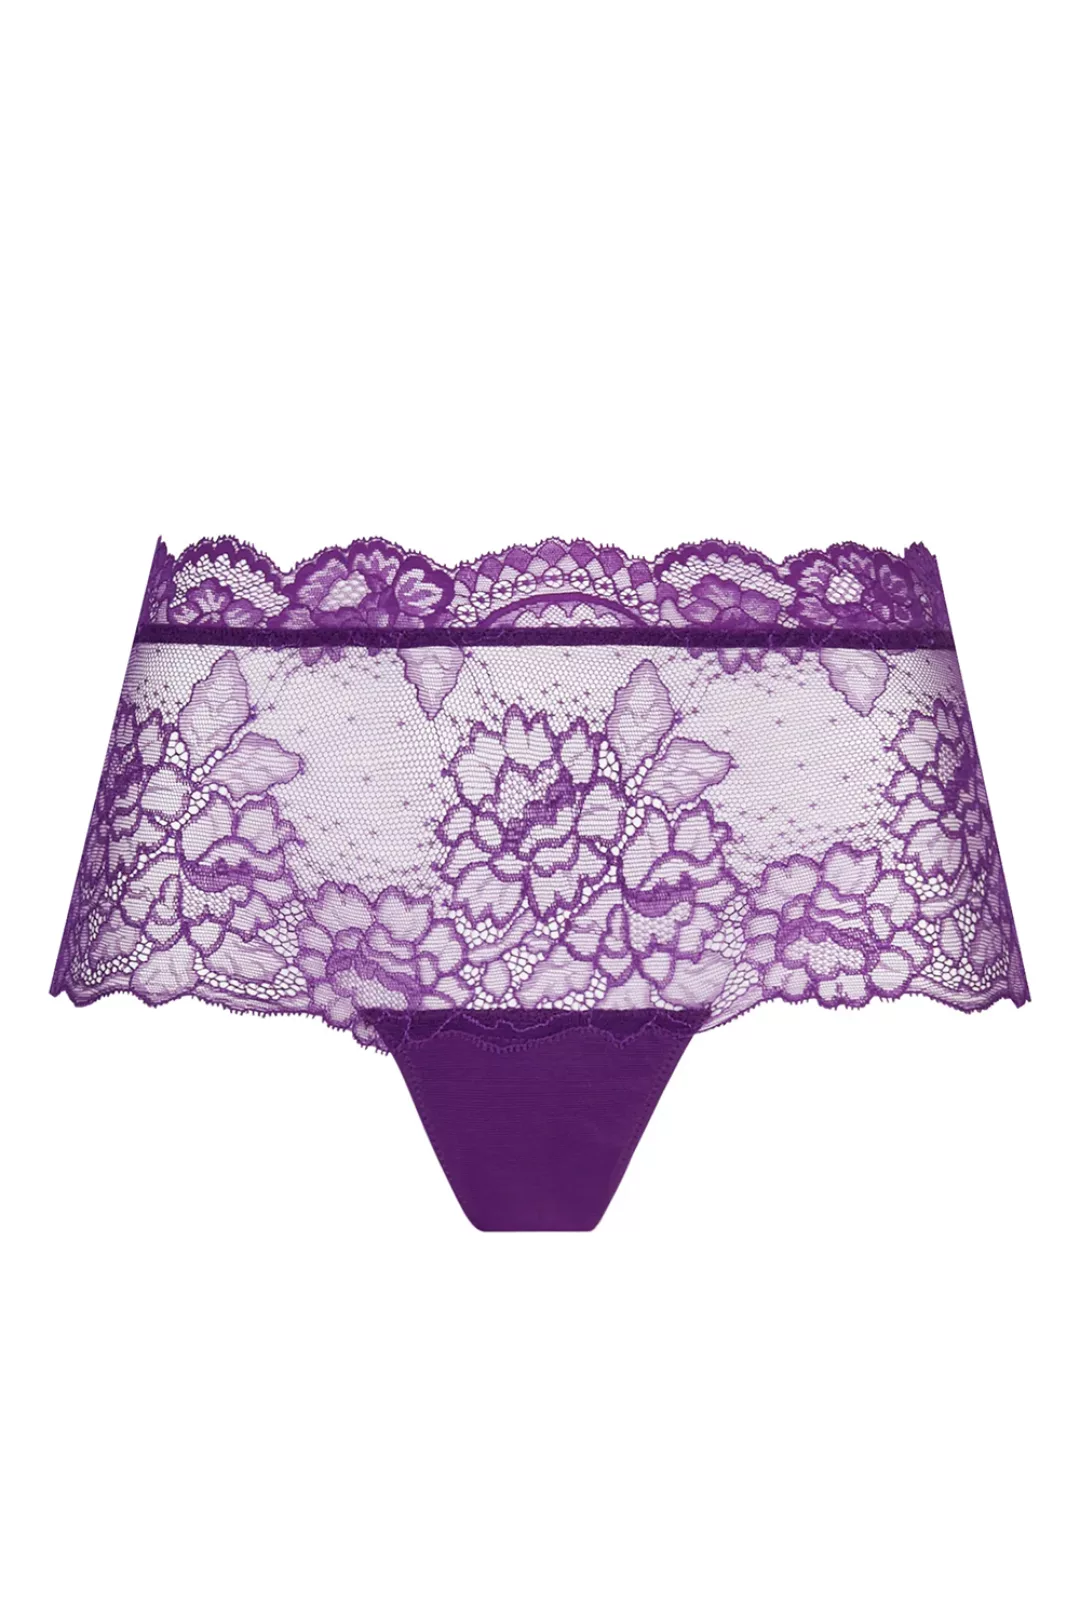 Lise Charmel Shorty Sublime en dentelle 44 violett günstig online kaufen